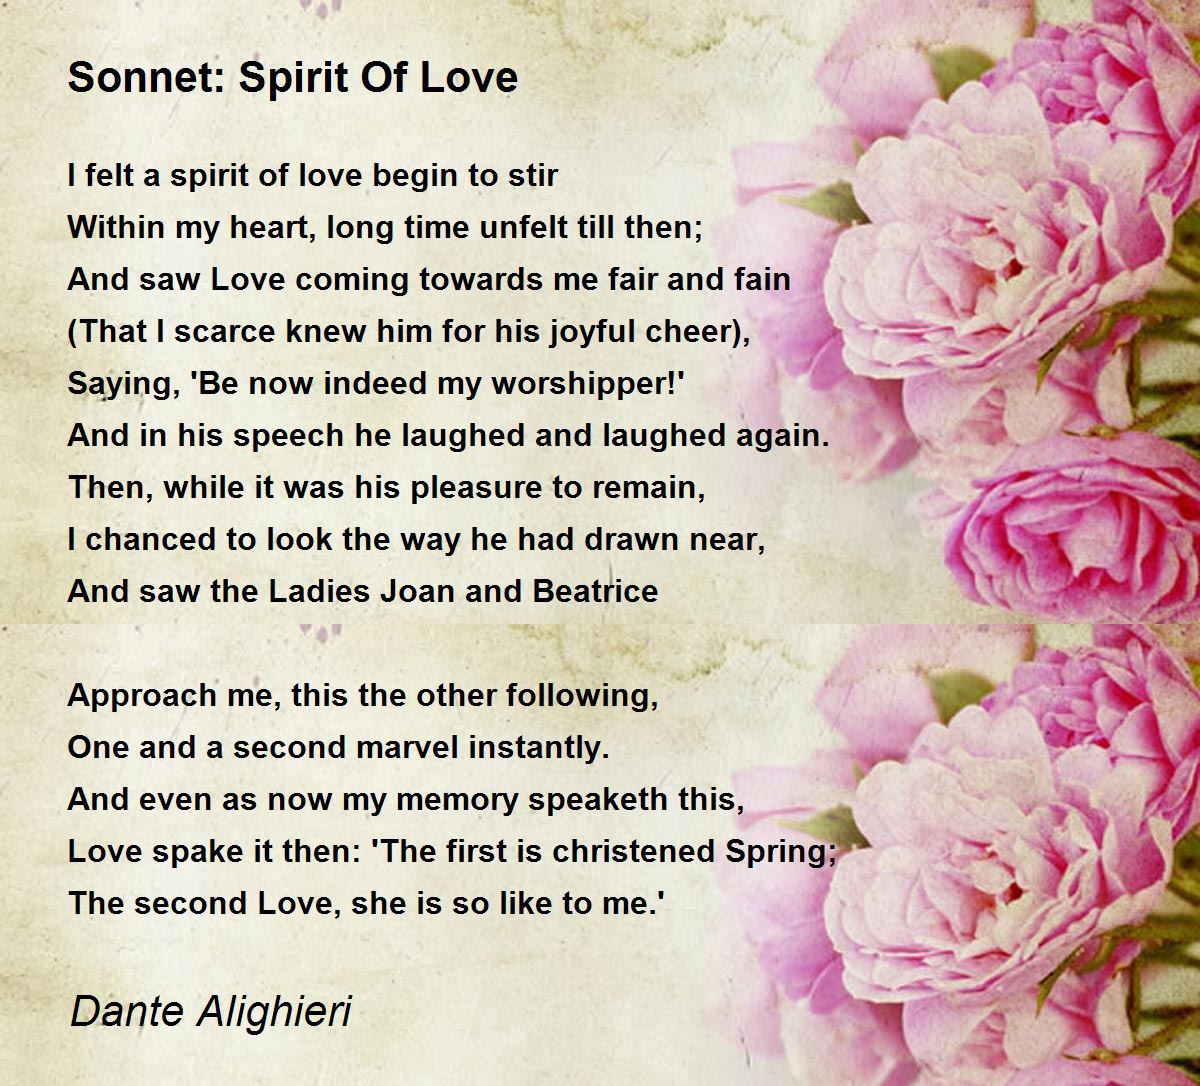 sonnet poem about love